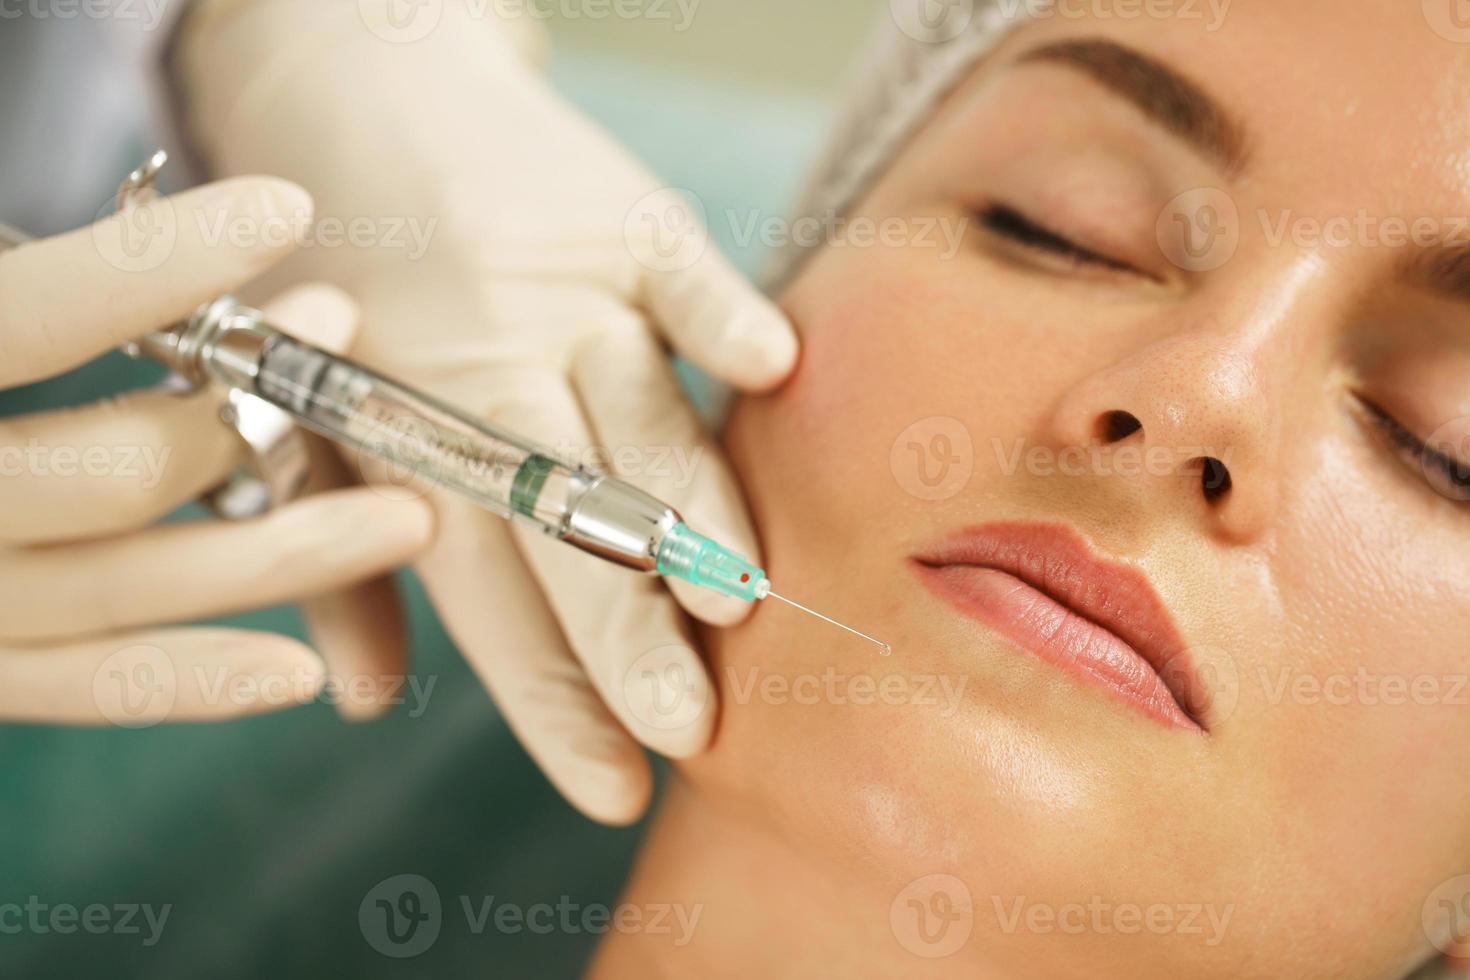 mulher recebendo injeção de anestésico local antes da cirurgia facial em uma clínica de estética médica foto